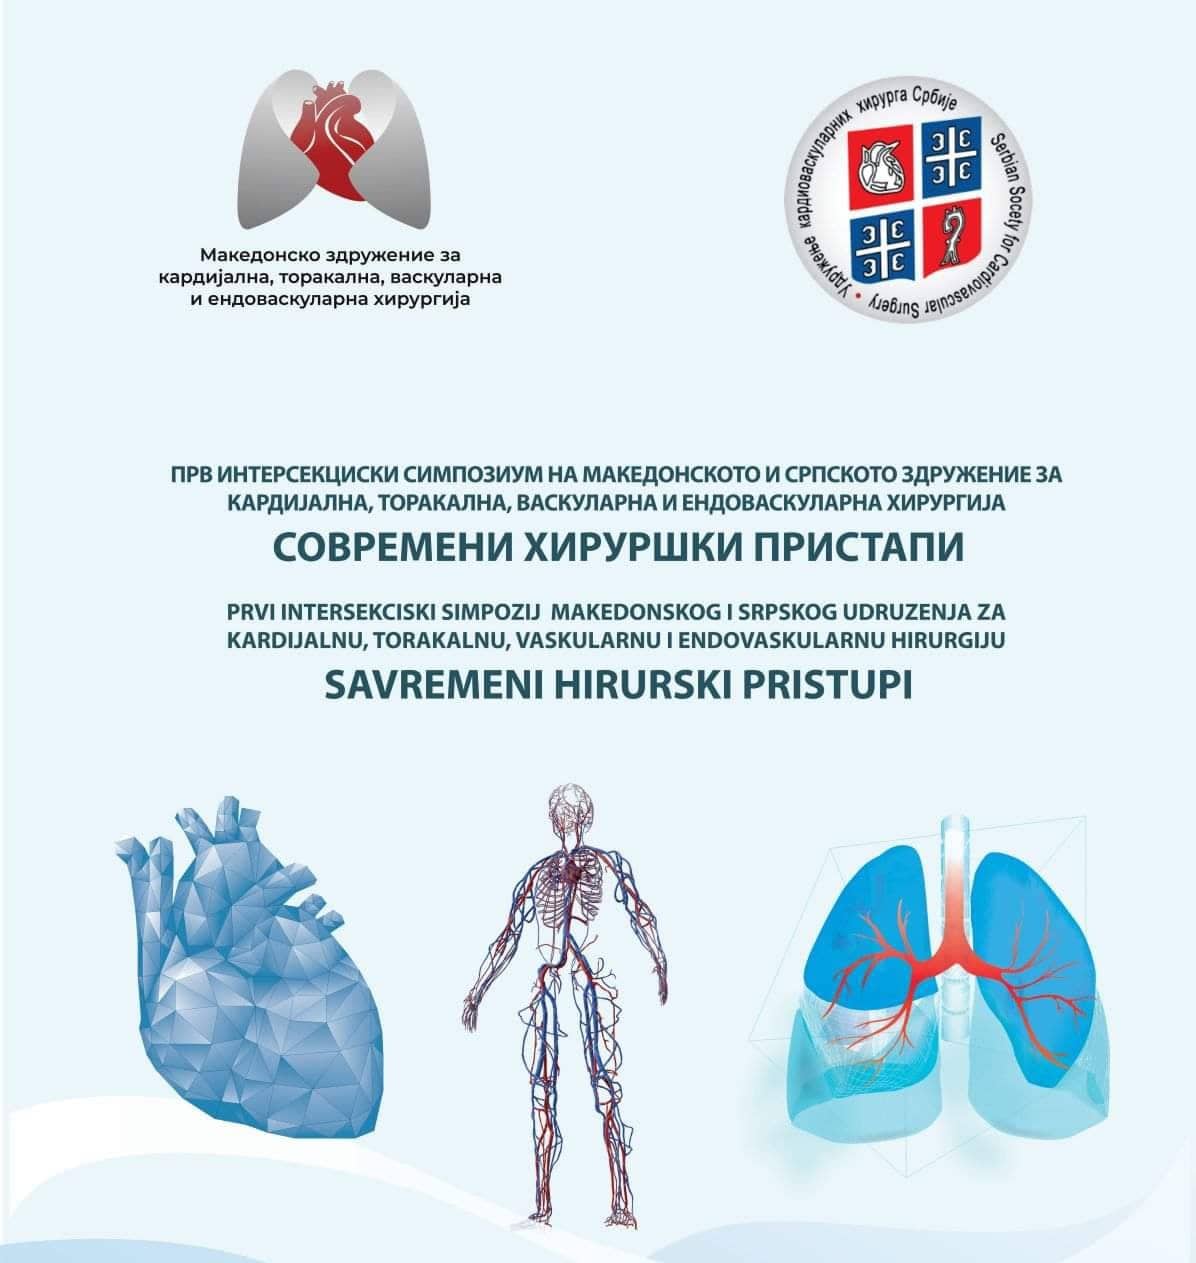 Симпозиум на македонското и српското Здружение на кардиоваскуларна хирургија во Скопје